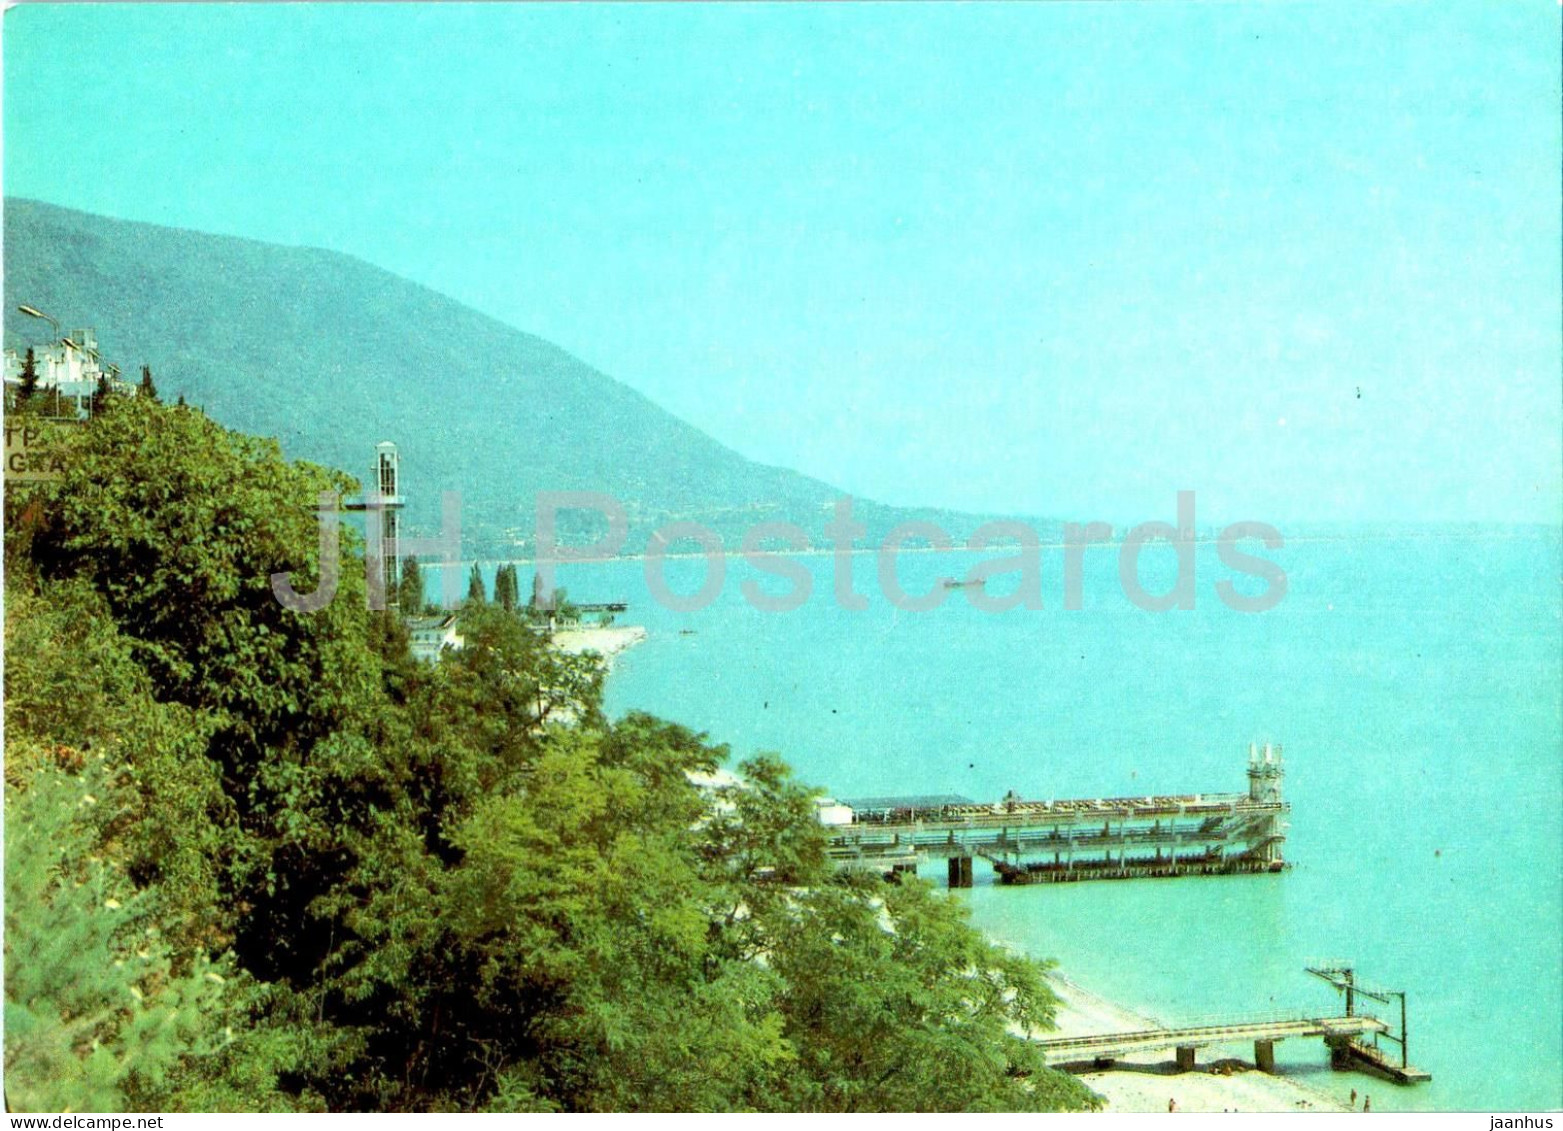 Gagra - View At The Town - Abkhazia - 1989 - Georgia USSR - Unused - Georgia